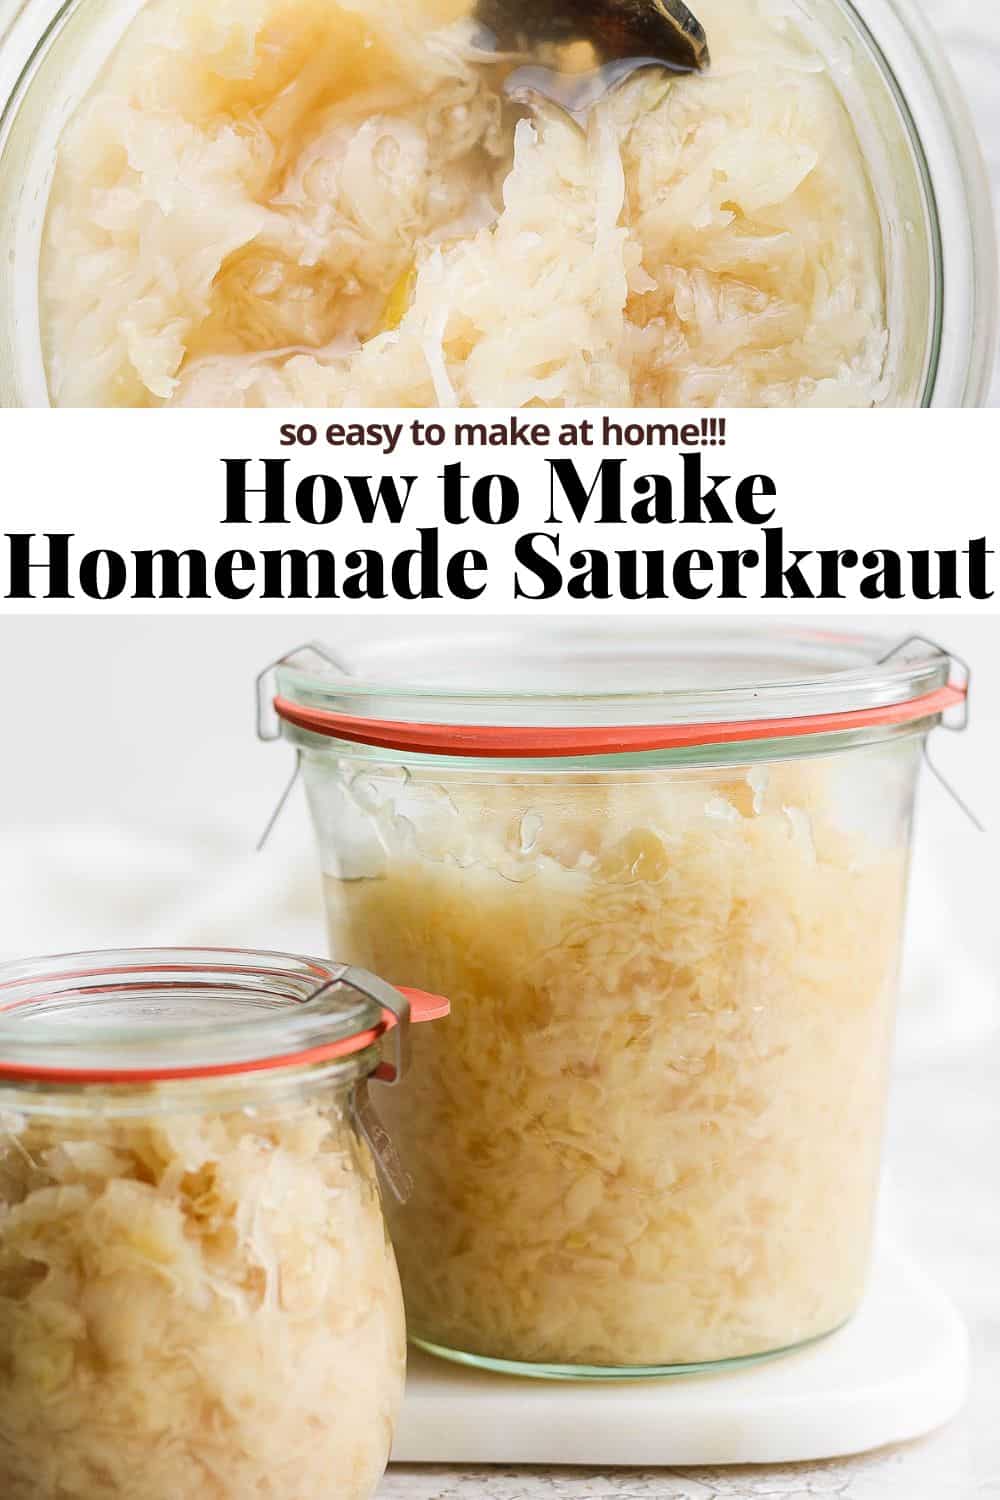 Pinterest image for homemade sauerkraut.